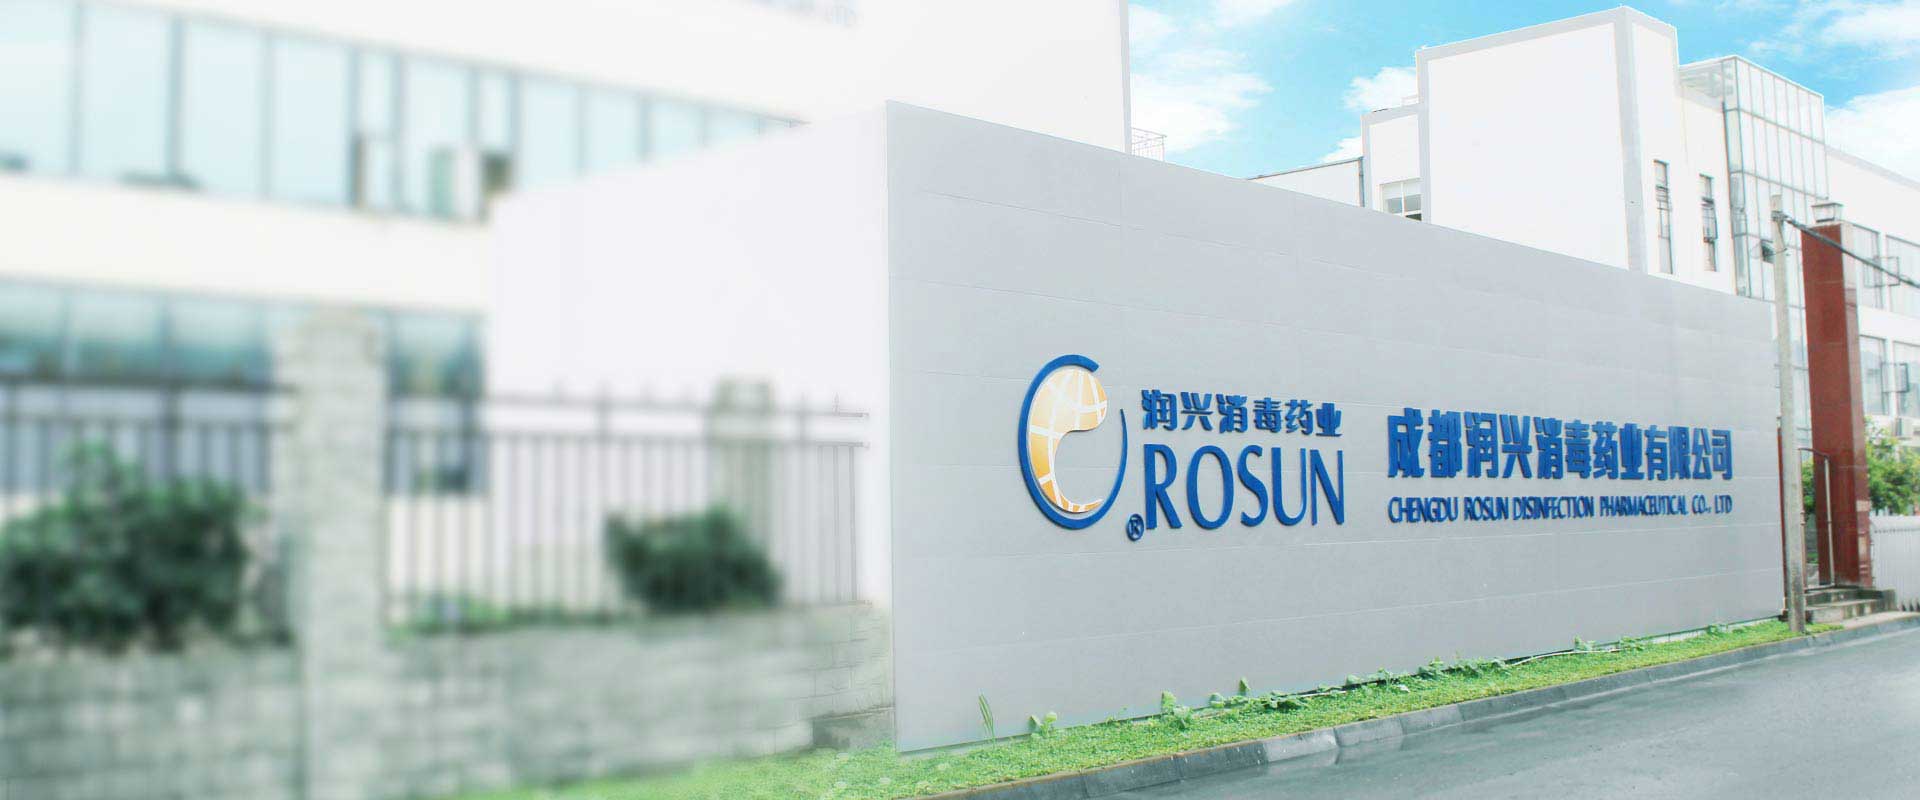 Chengdu Rosen sterilization Pharmaceutical Co., Ltd.